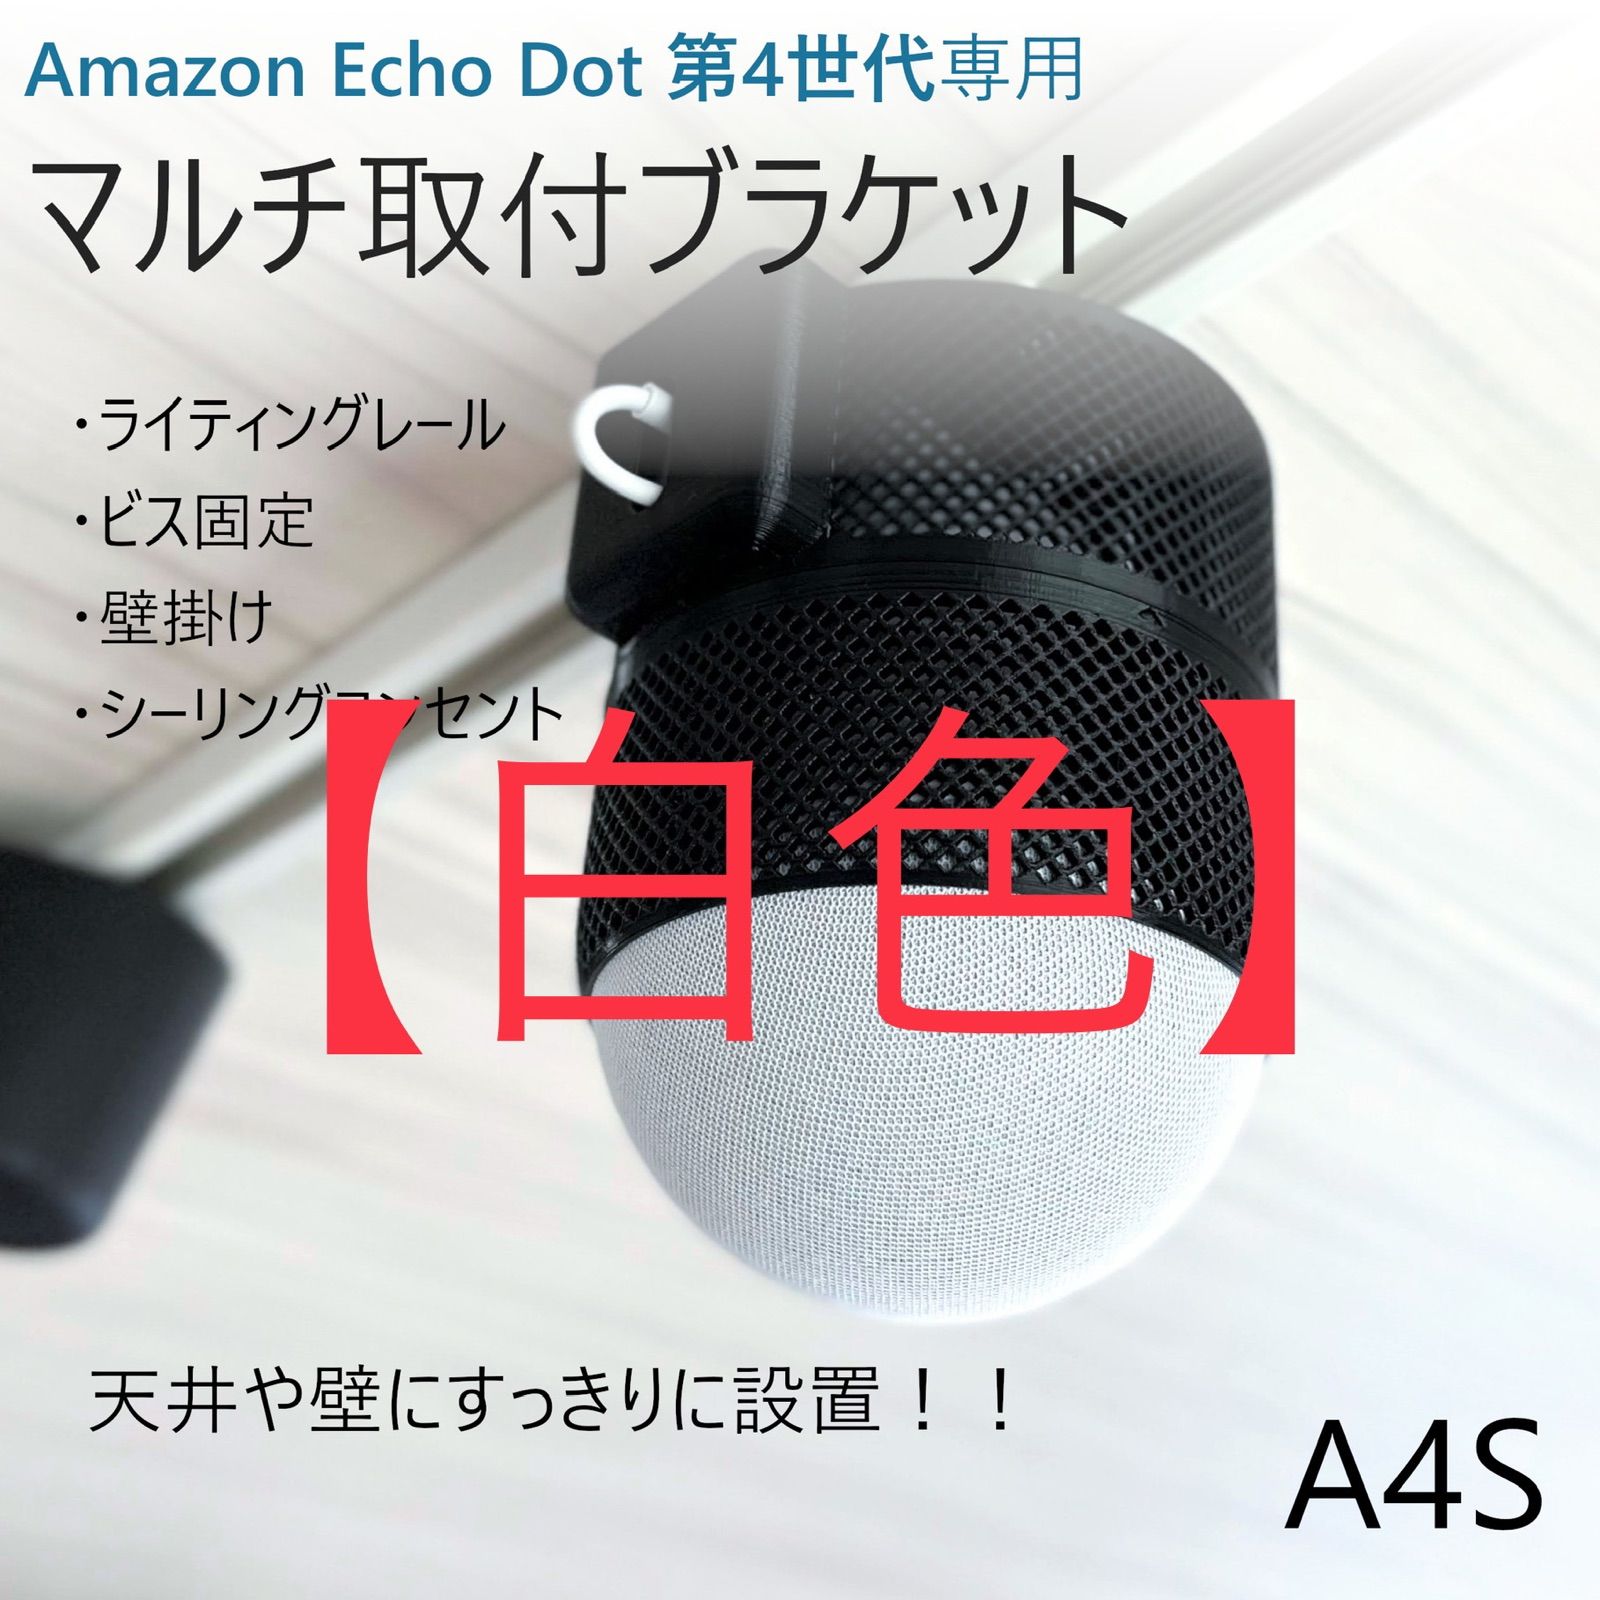 あなたにおすすめの商品 Echo Dot 第4世代専用 マルチ取付ブラケット A4S